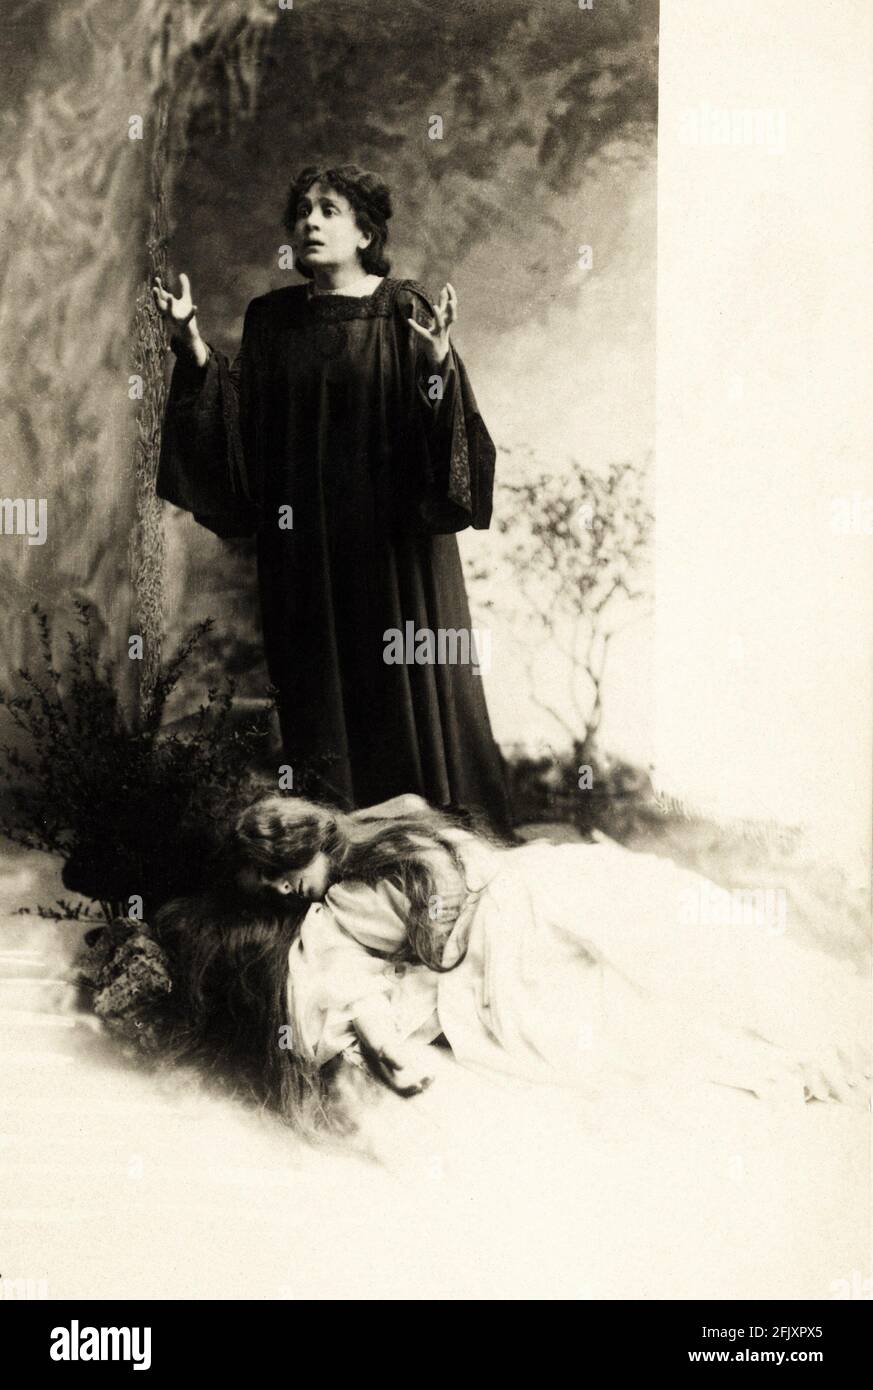 1896 , ITALIEN: Die berühmteste italienische Schauspielerin ELEONORA DUSE ( 1858 - 1924 ) in 'Città morta ' ( die Tote Stadt ) , Schauspiel von ihrer Geliebten GABRIELE D' ANNUNZIO , Kostüm von FORTUNY- THEATER - TEATRO - DANNUNZIO - D' ANNUNZIO - divina - attrice teatrale ---- Archivio GBB Stockfoto